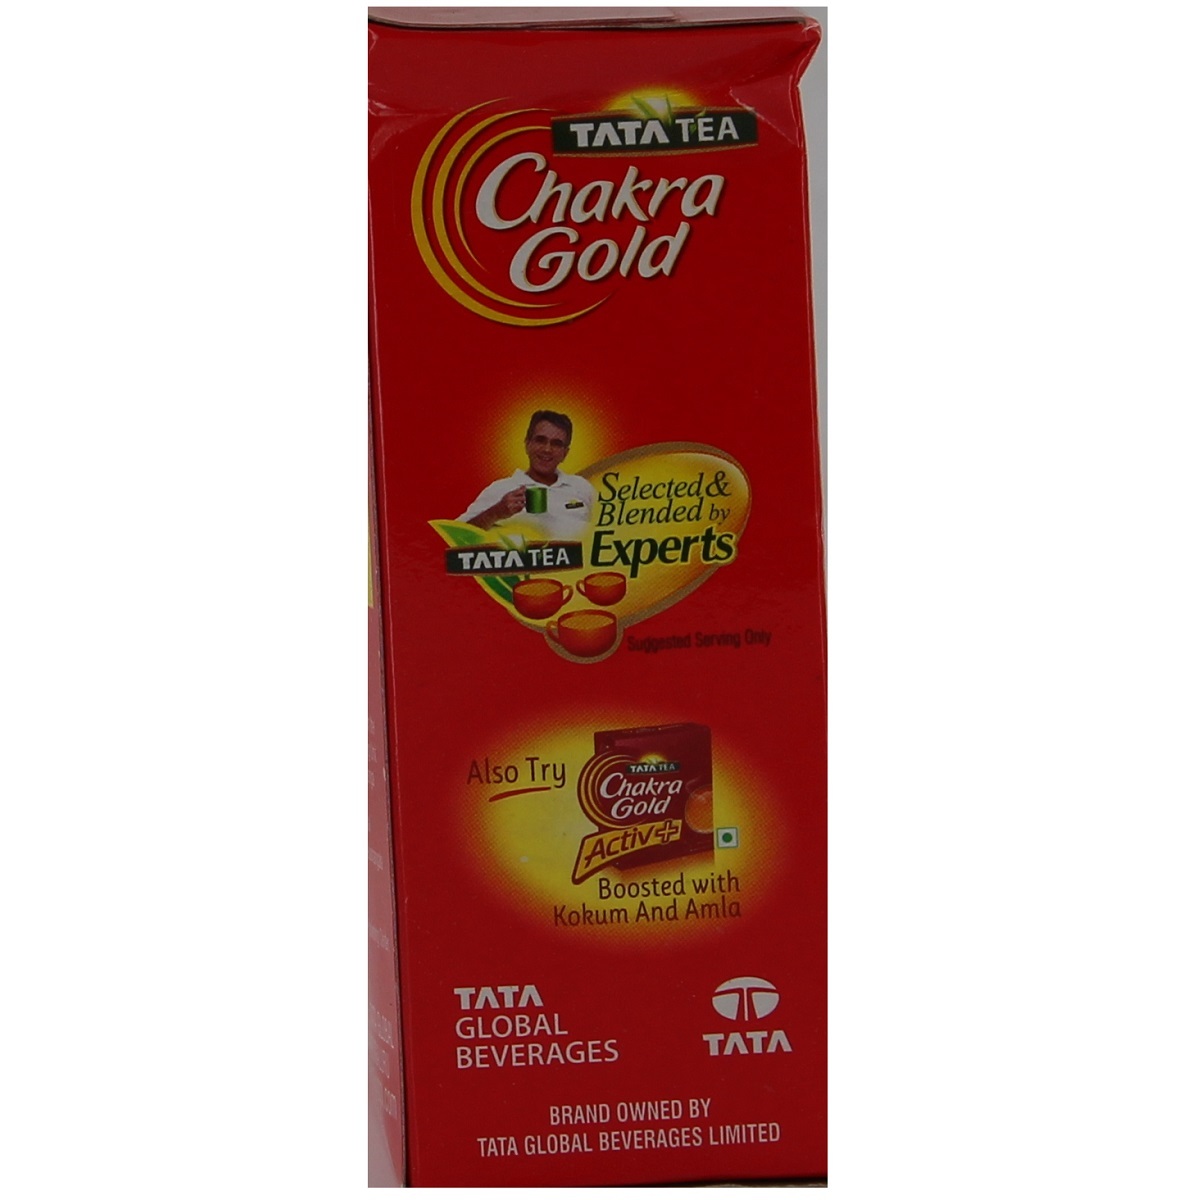 Chakra Gold Premium Tea 250g